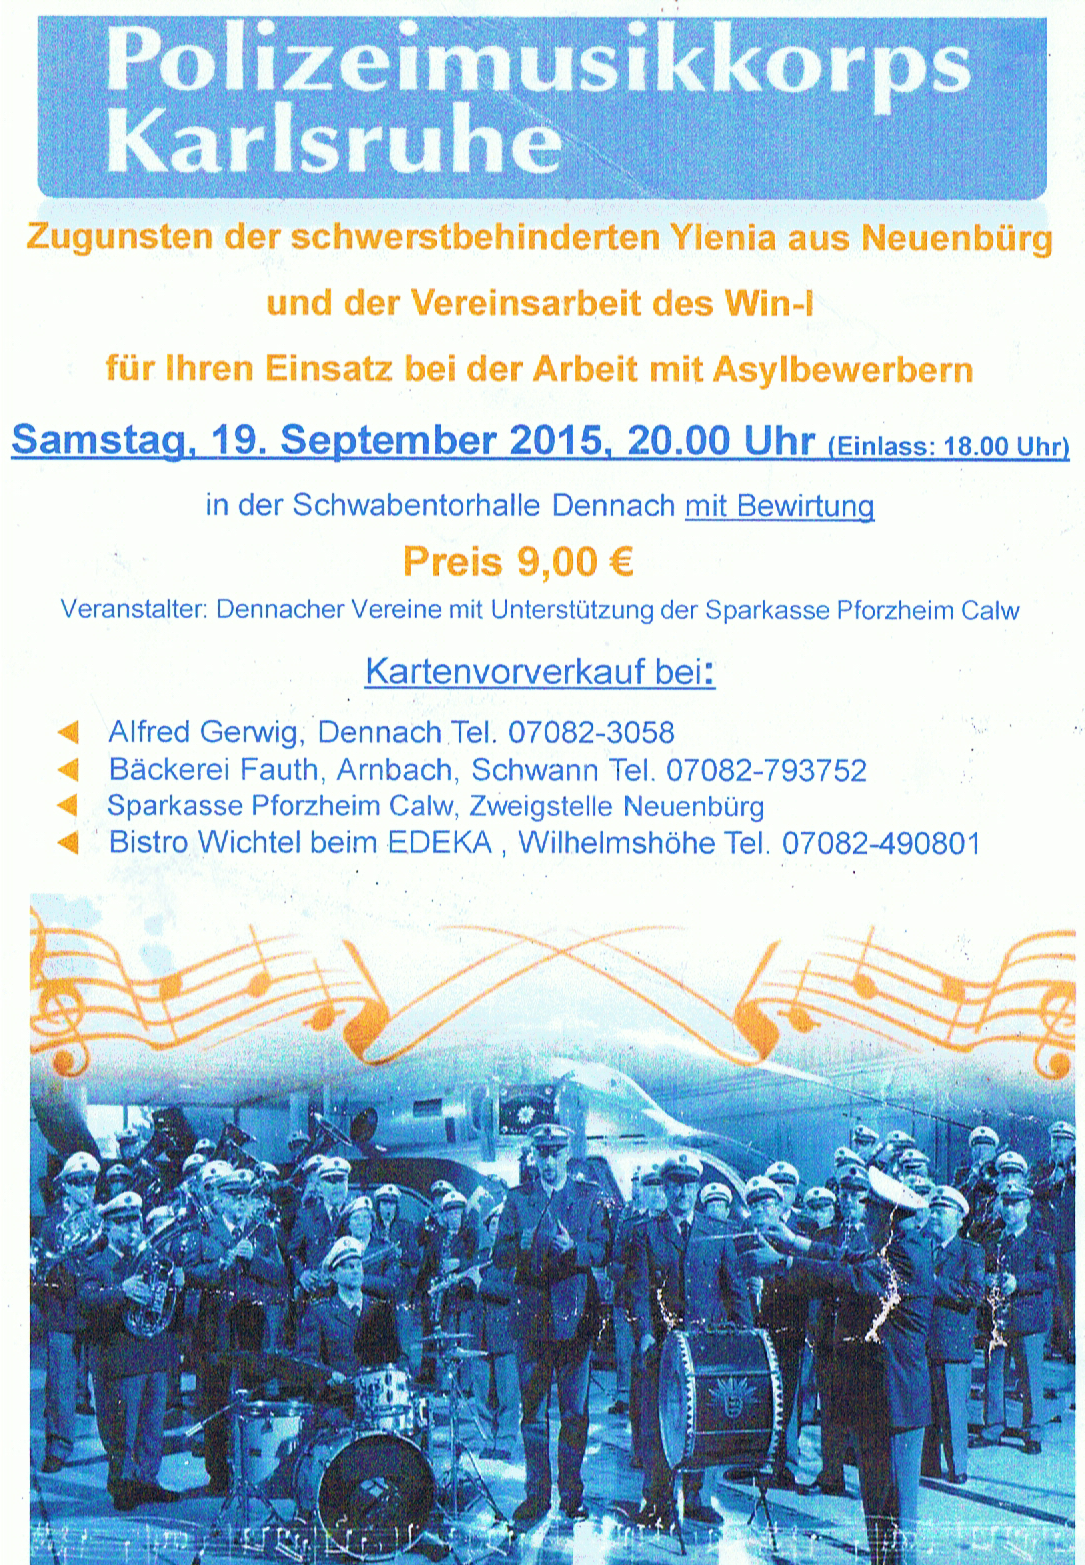 Benefizkonzert zugunsten von WiN-I am 19. September in Dennach